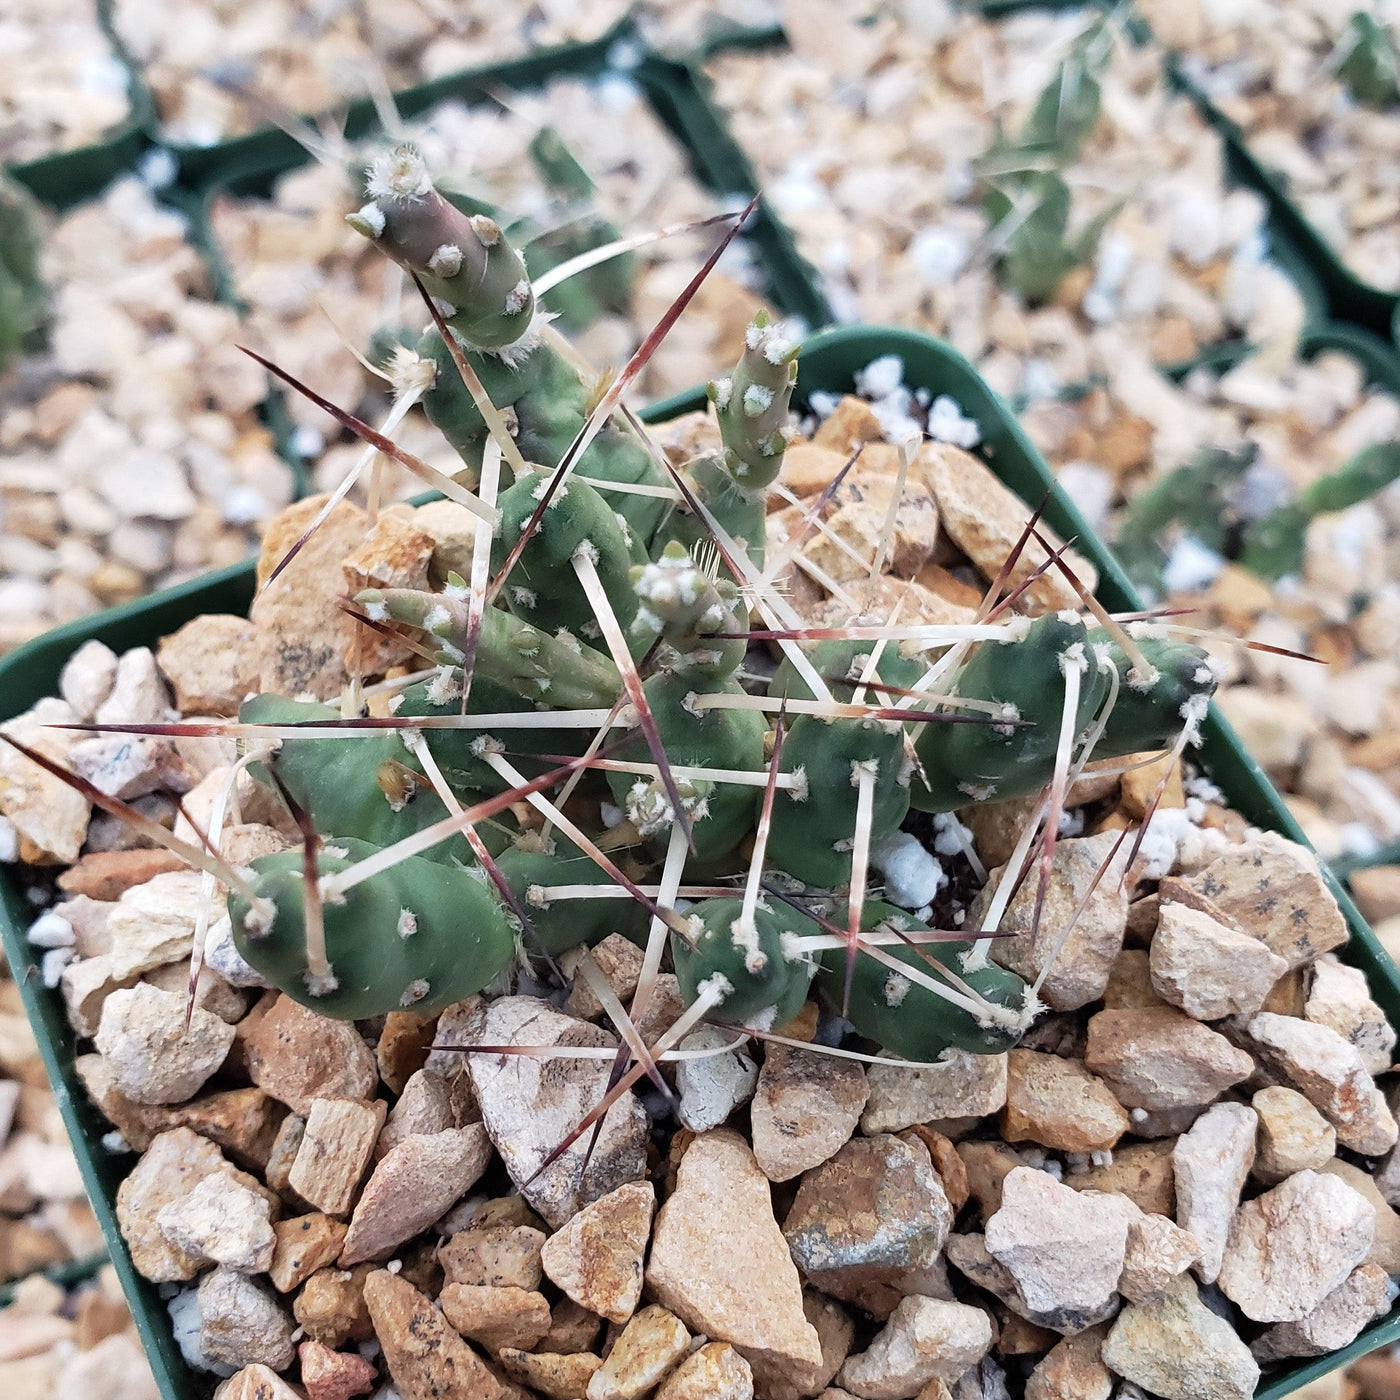 Paper Pine Cactus - Maihueniopsis glomerata